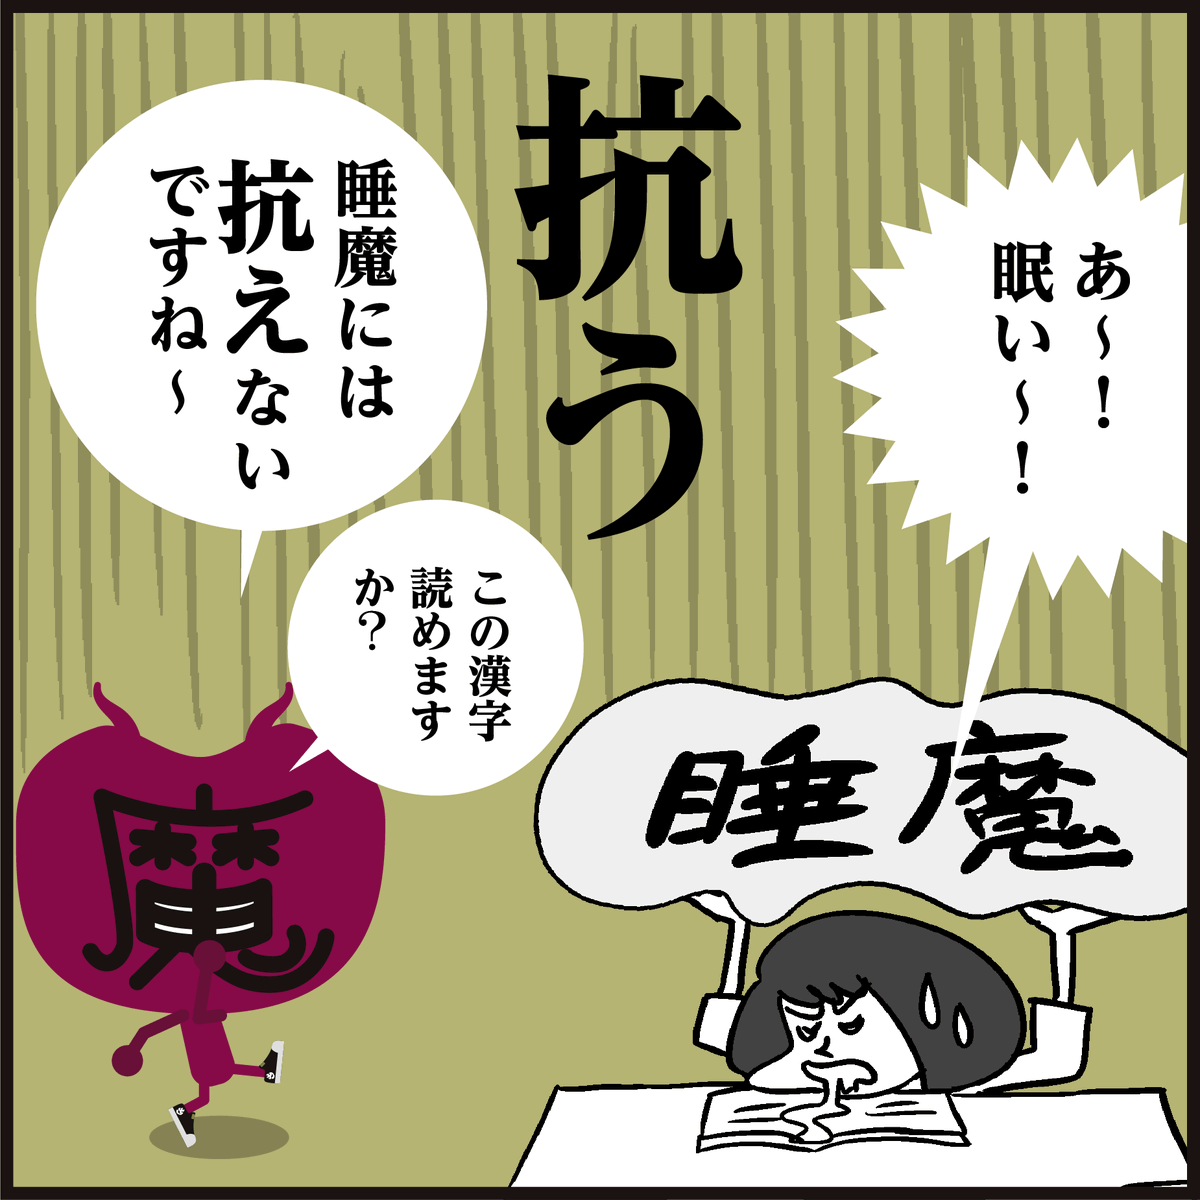 漢字【抗う】読めましたか?
🇷🇺ロシアに【抗う】姿勢を見せている🇺🇦ウクライナ…
😖起こっている現状の報道に胸が痛みます。🌏早く世界に平和が訪れますように。🙏 
#イラスト #4コマ漫画 